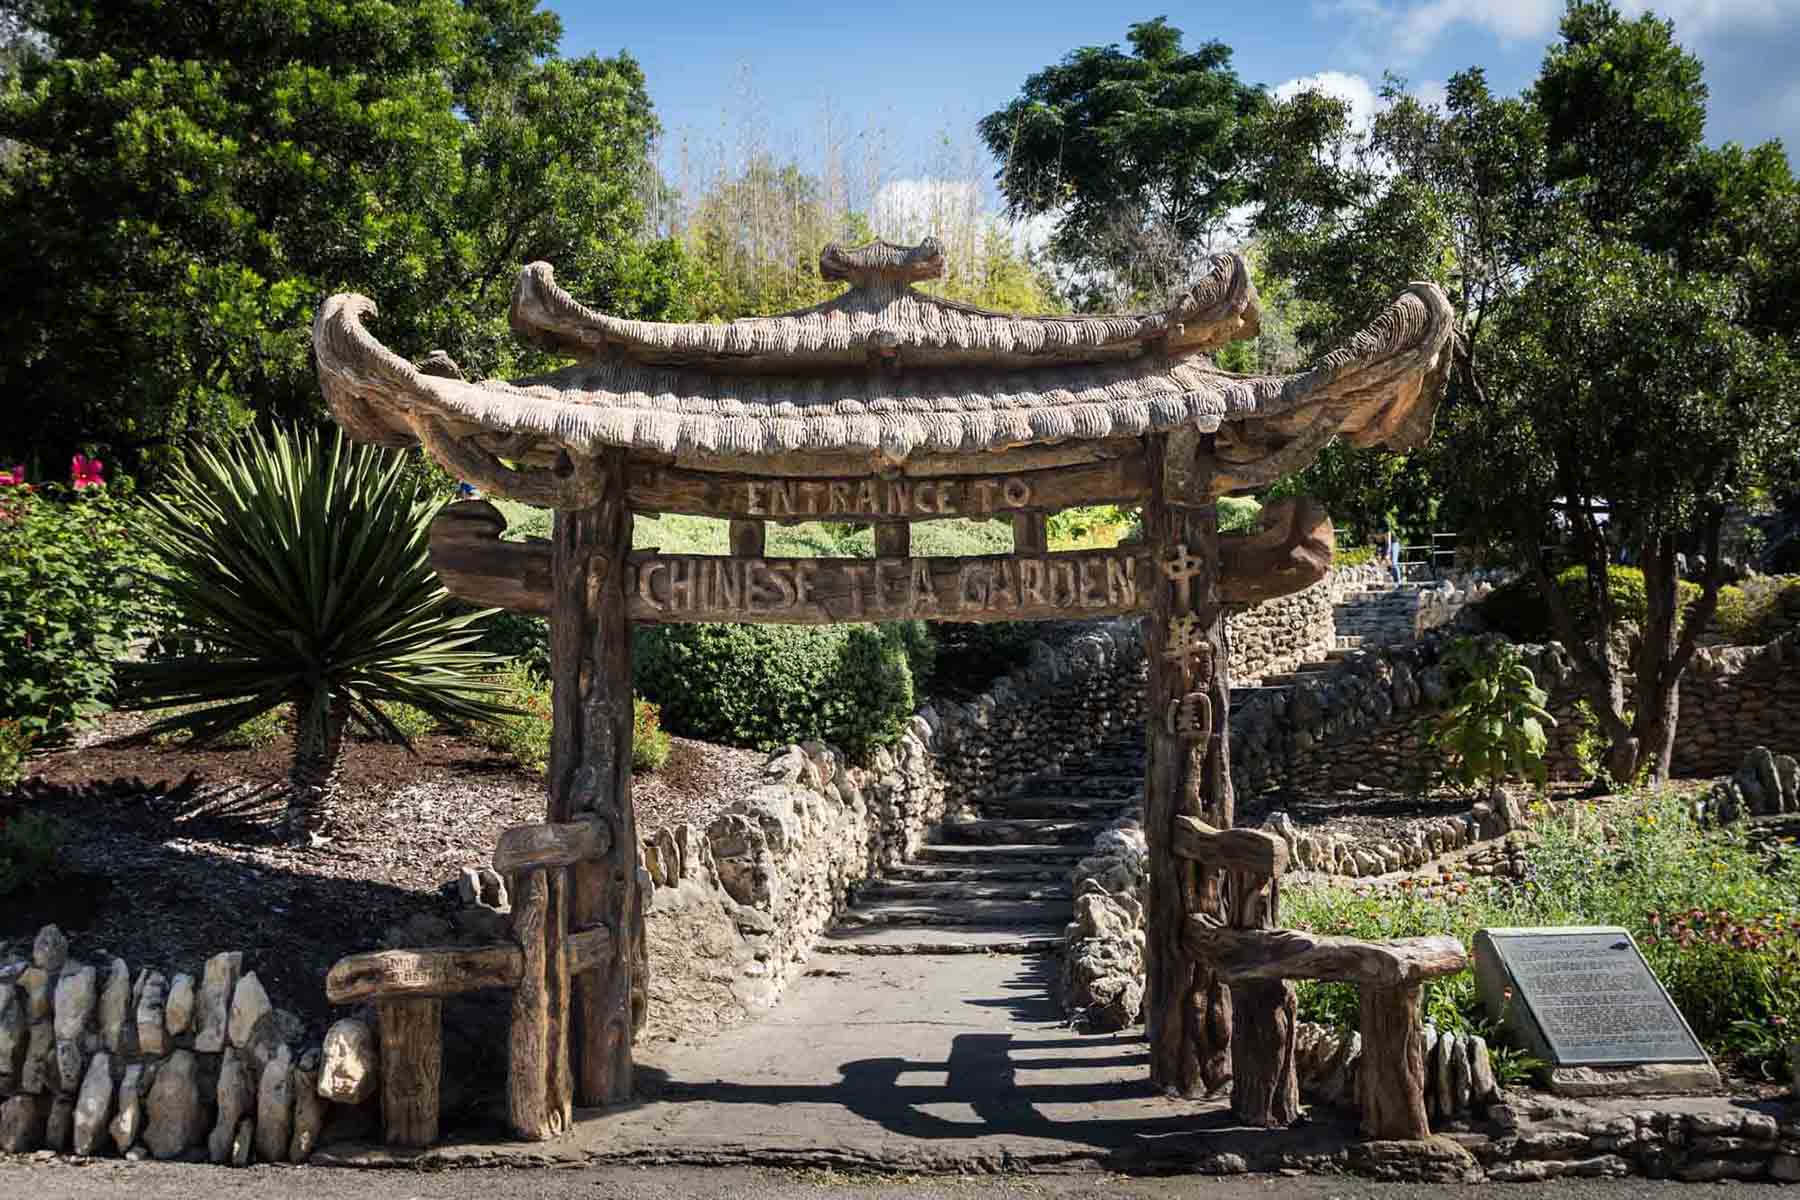 Entrance to the Japanese Tea Garden in San Antonio